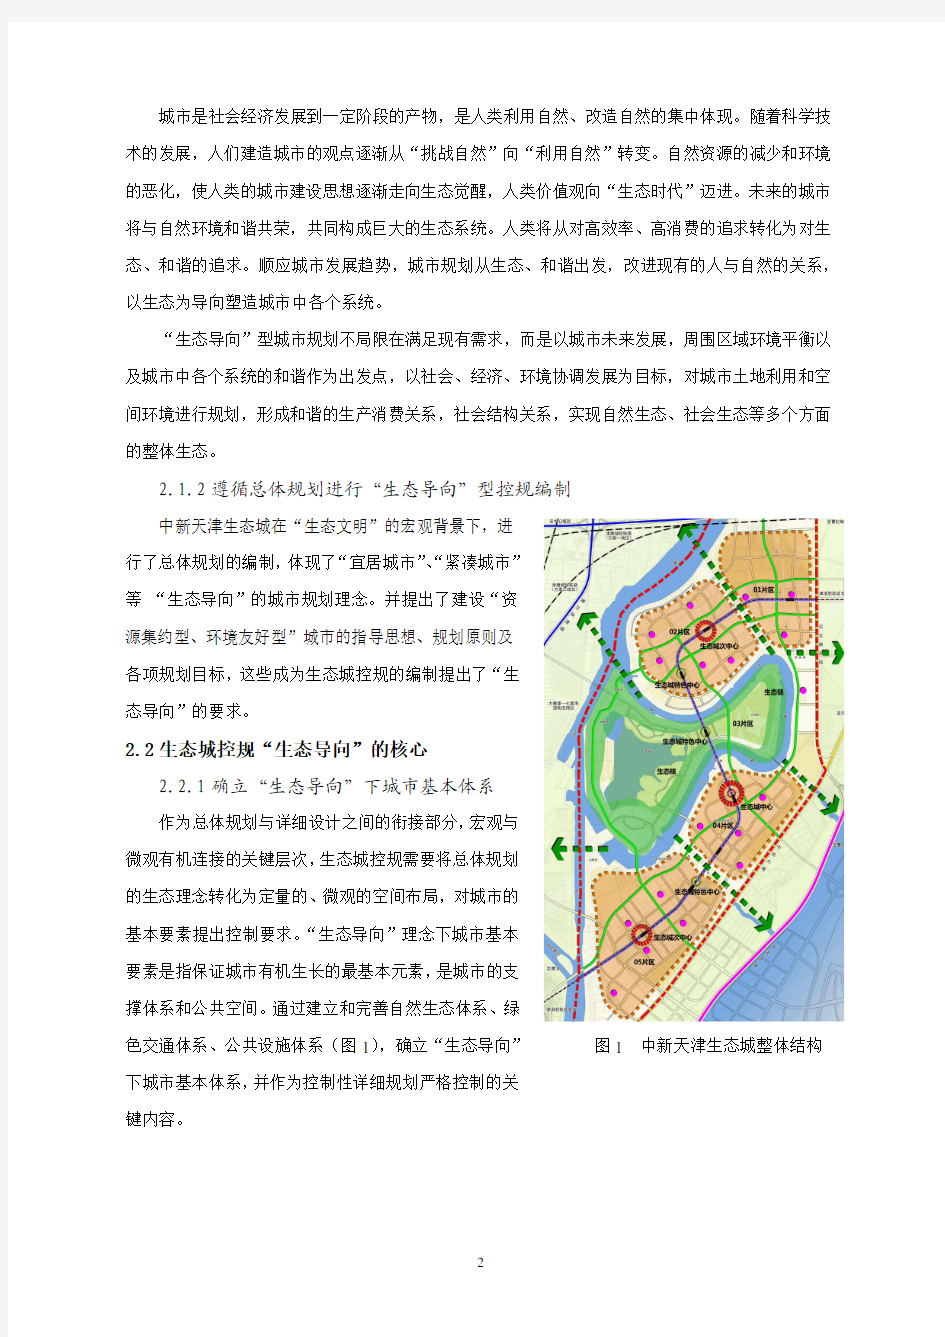 生态导向型控制性详细规划以中新天津生态城控制性详细规划为例